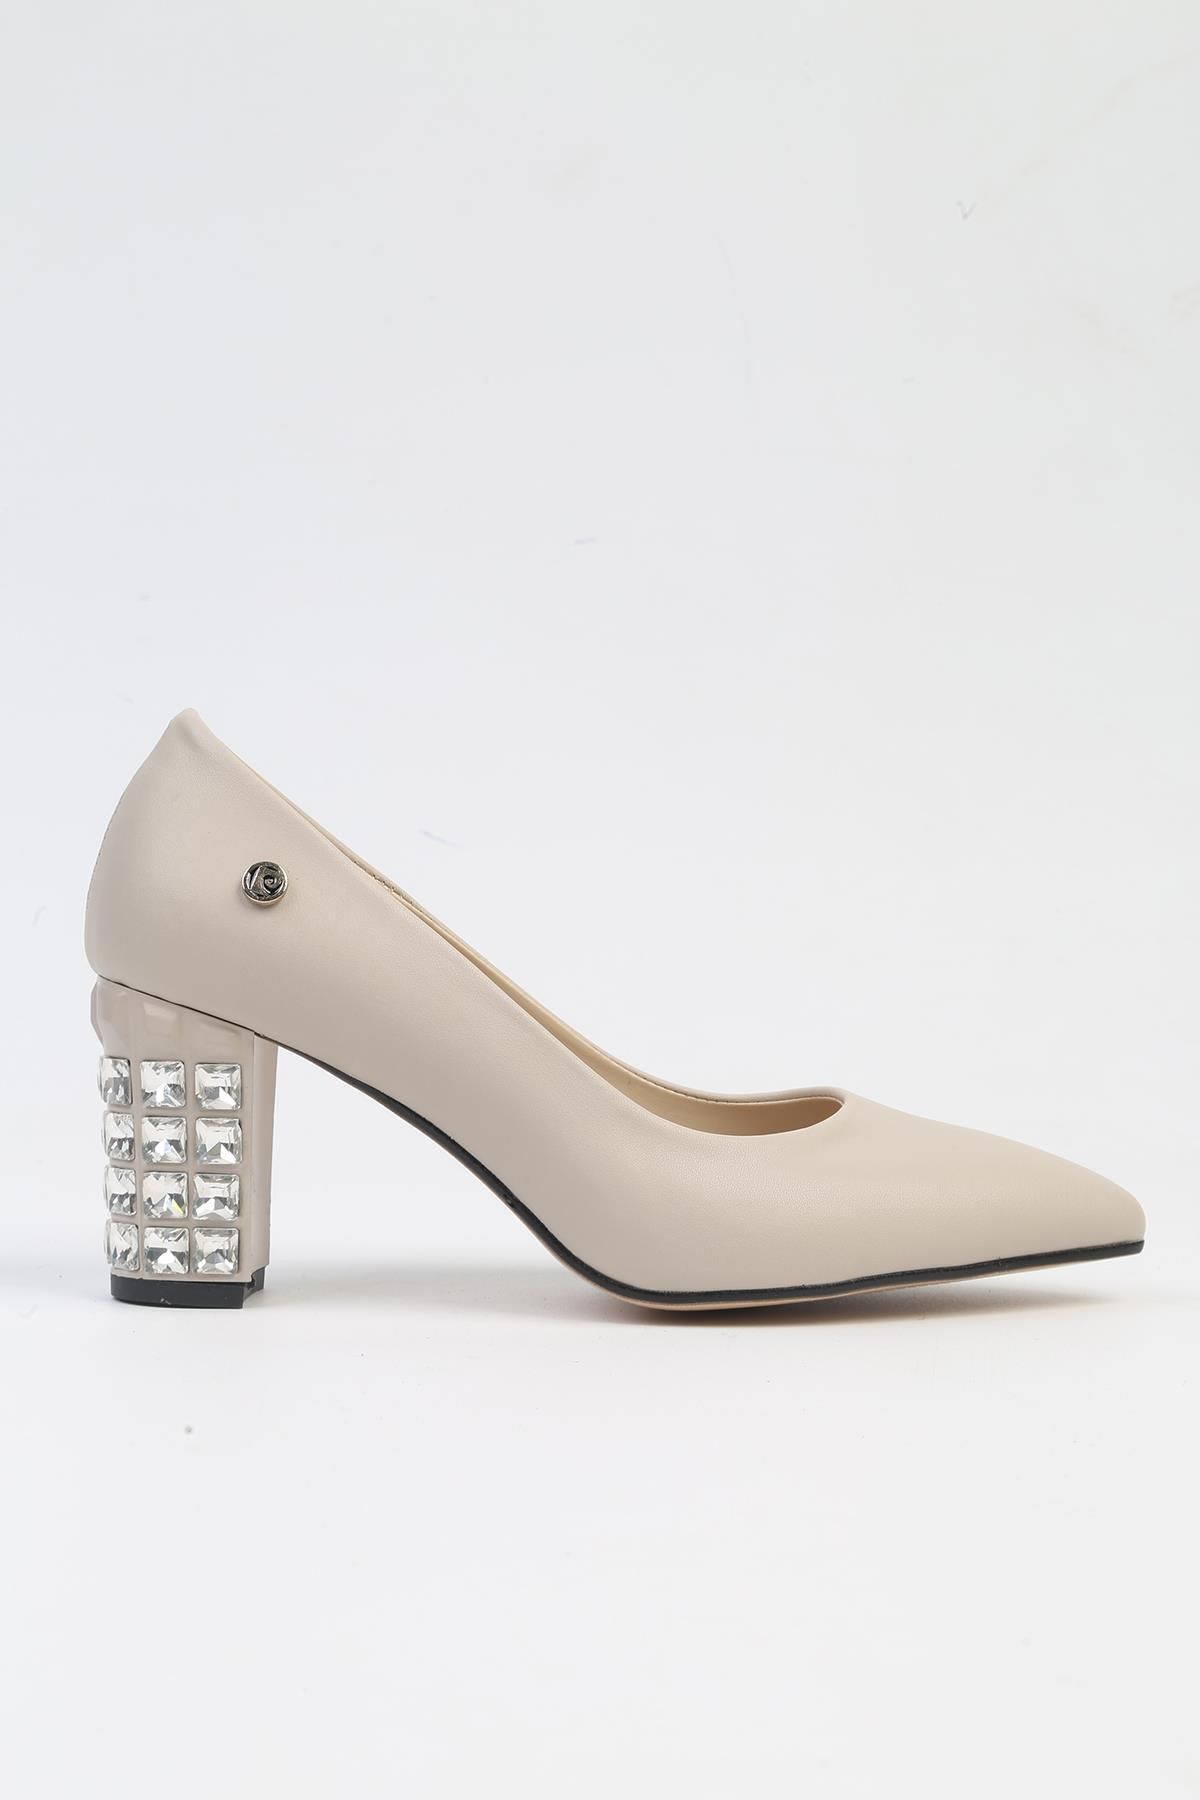 Pierre Cardin ® | PC-51201 - 3478 Bej Cilt - Kadın Topuklu Ayakkabı